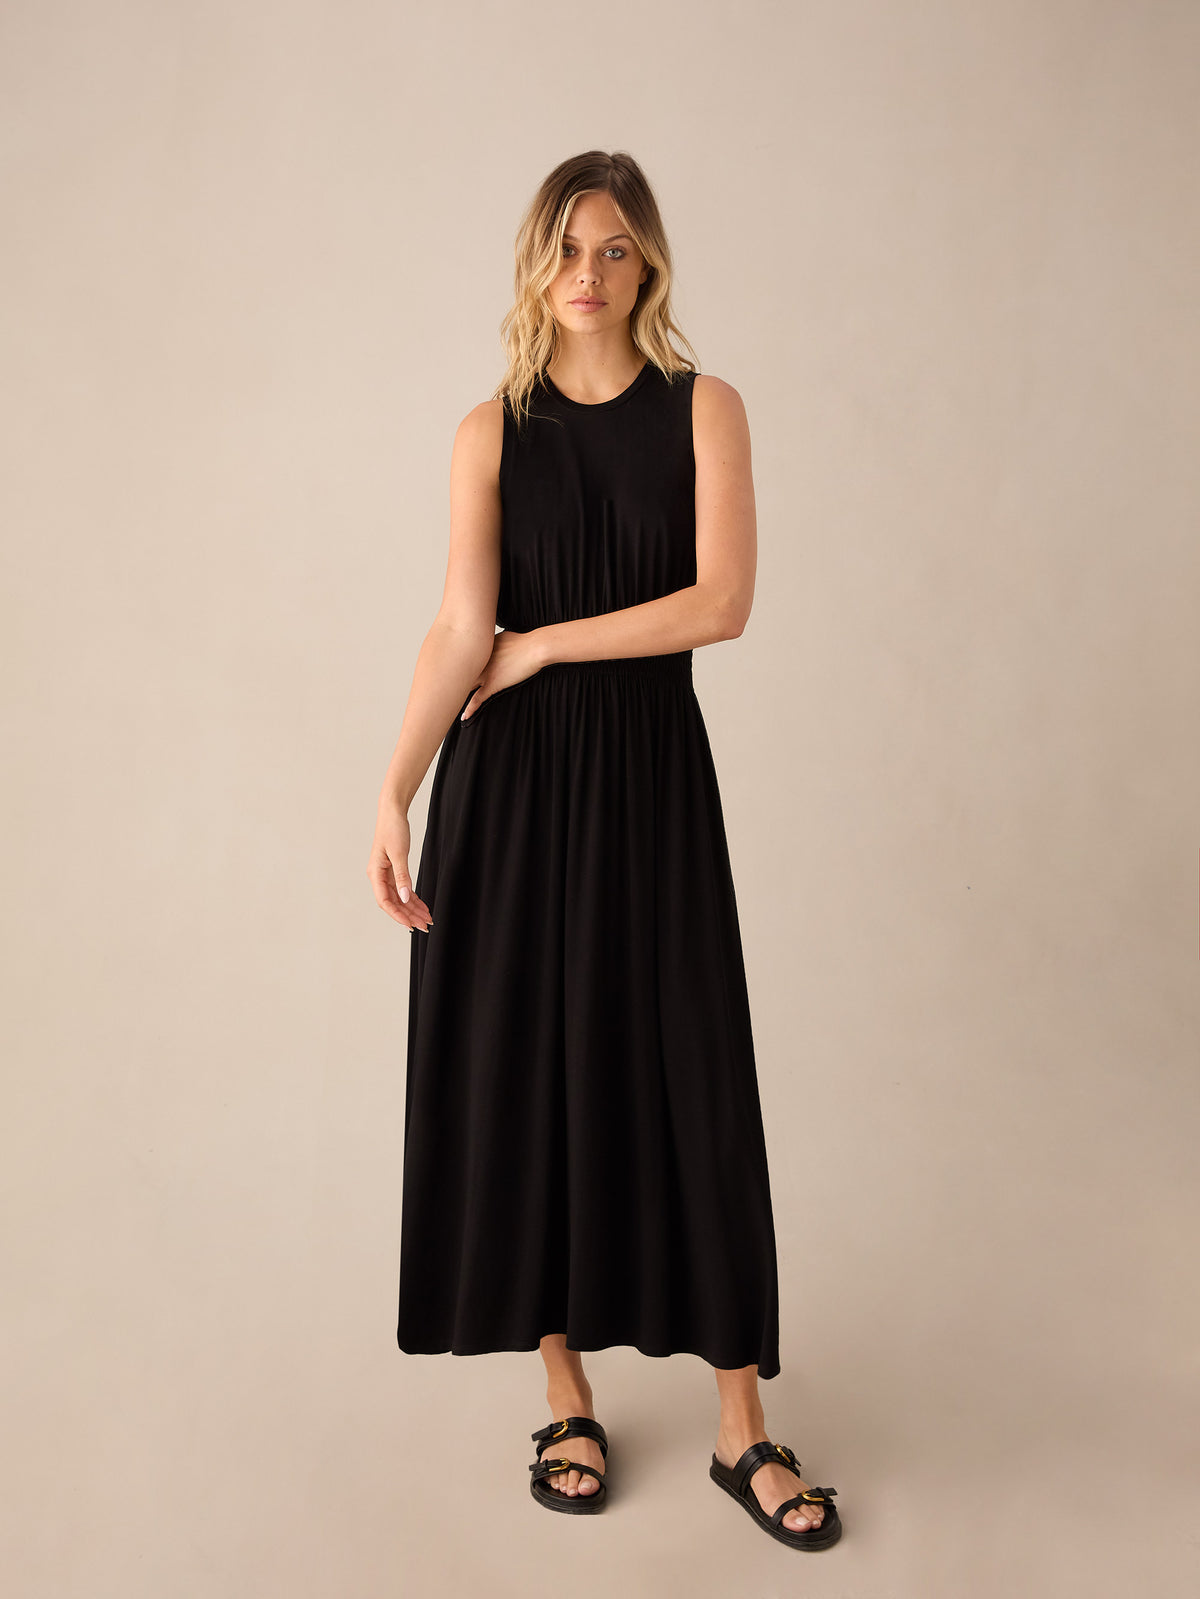 Petite Black Jersey Shirred Waistband Dress